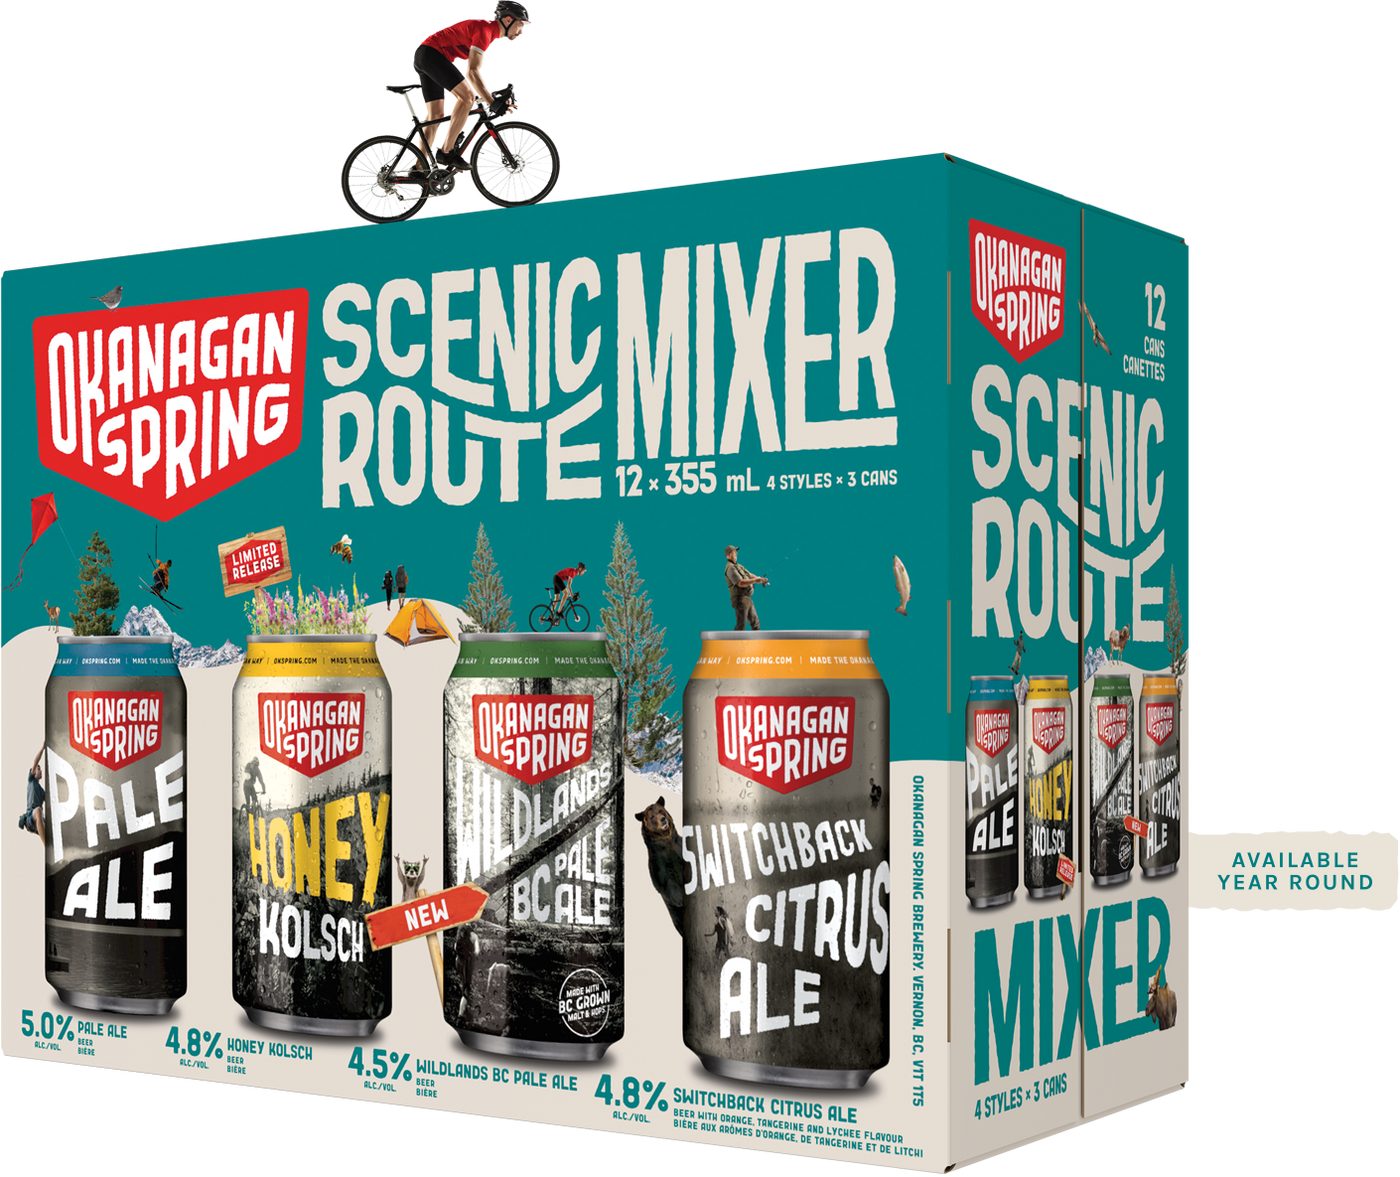 Okanagan Spring Scenic Route Mixer 12AR